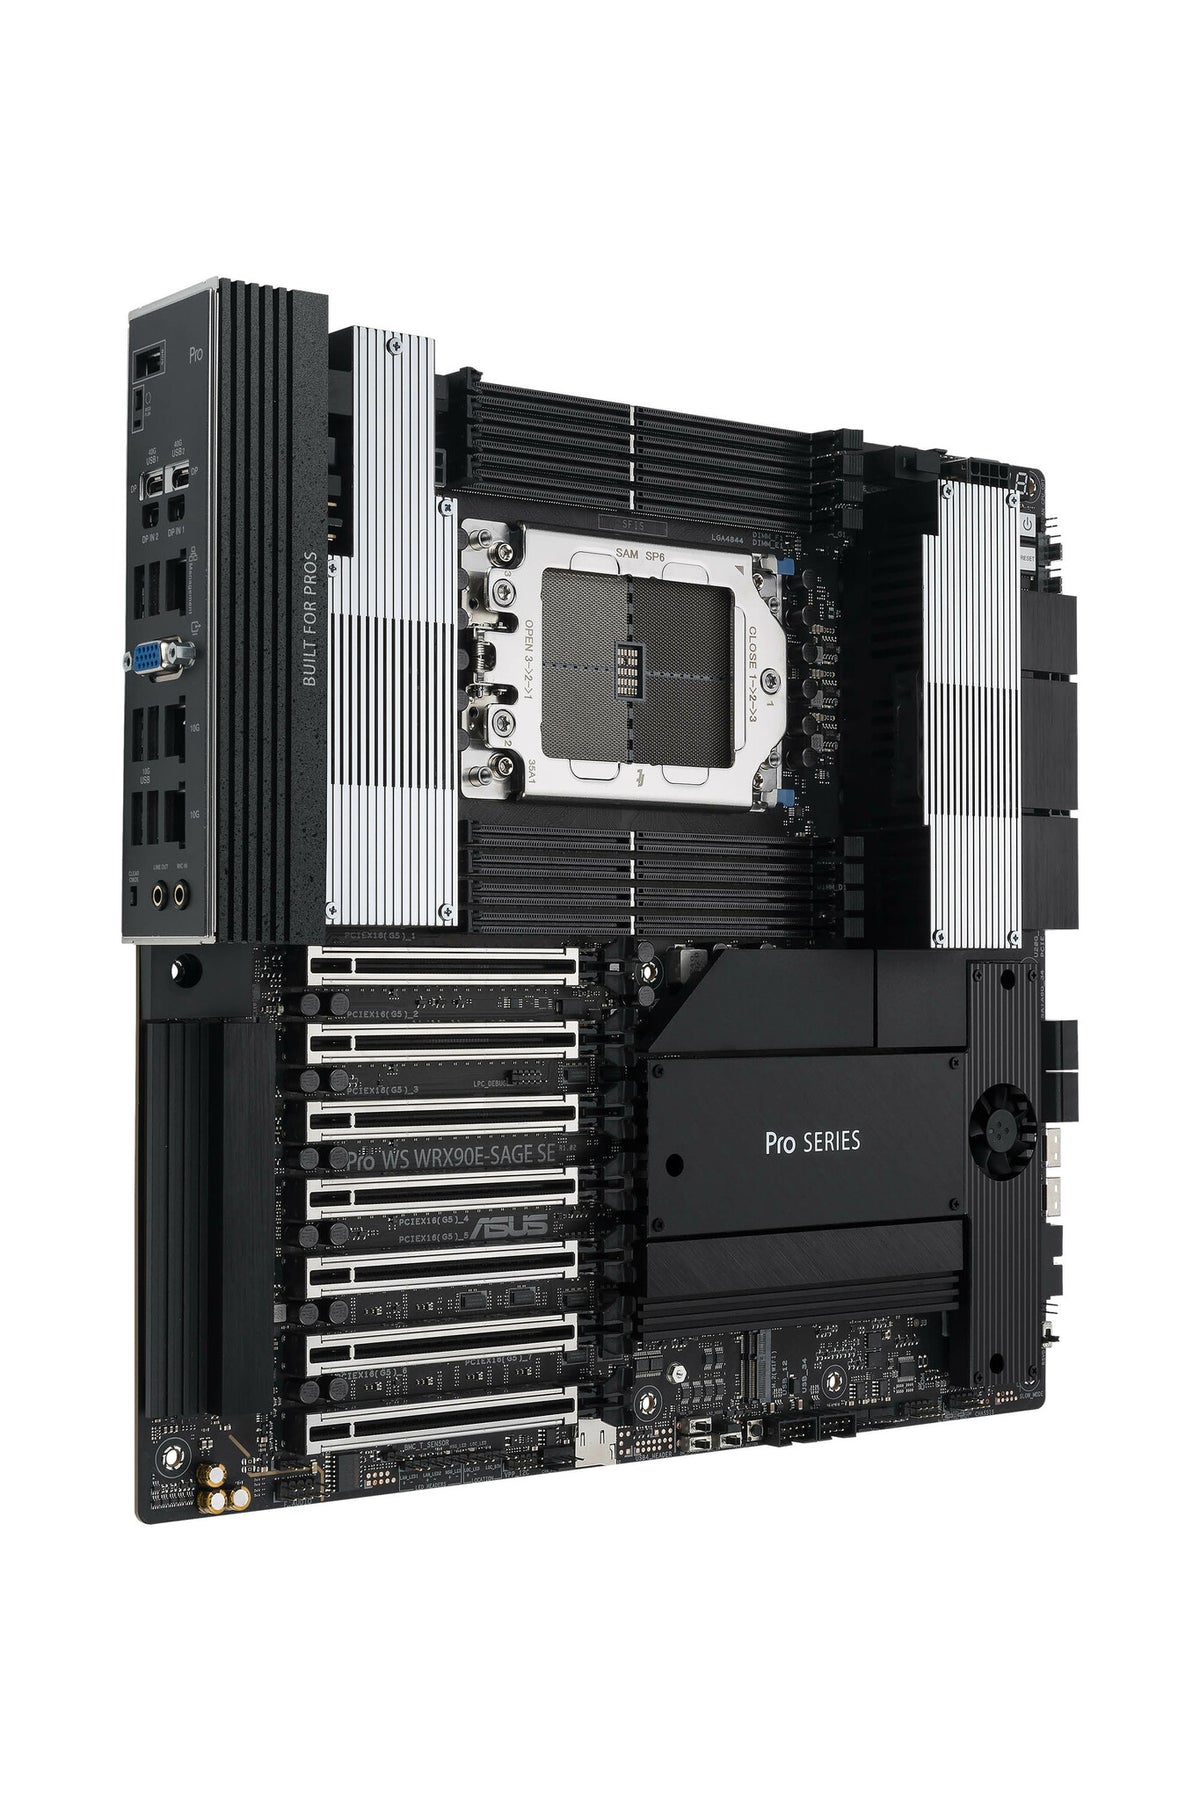 ASUS PRO WS WRX90E-SAGE SE EEB motherboard - AMD WRX90 Socket sTR5